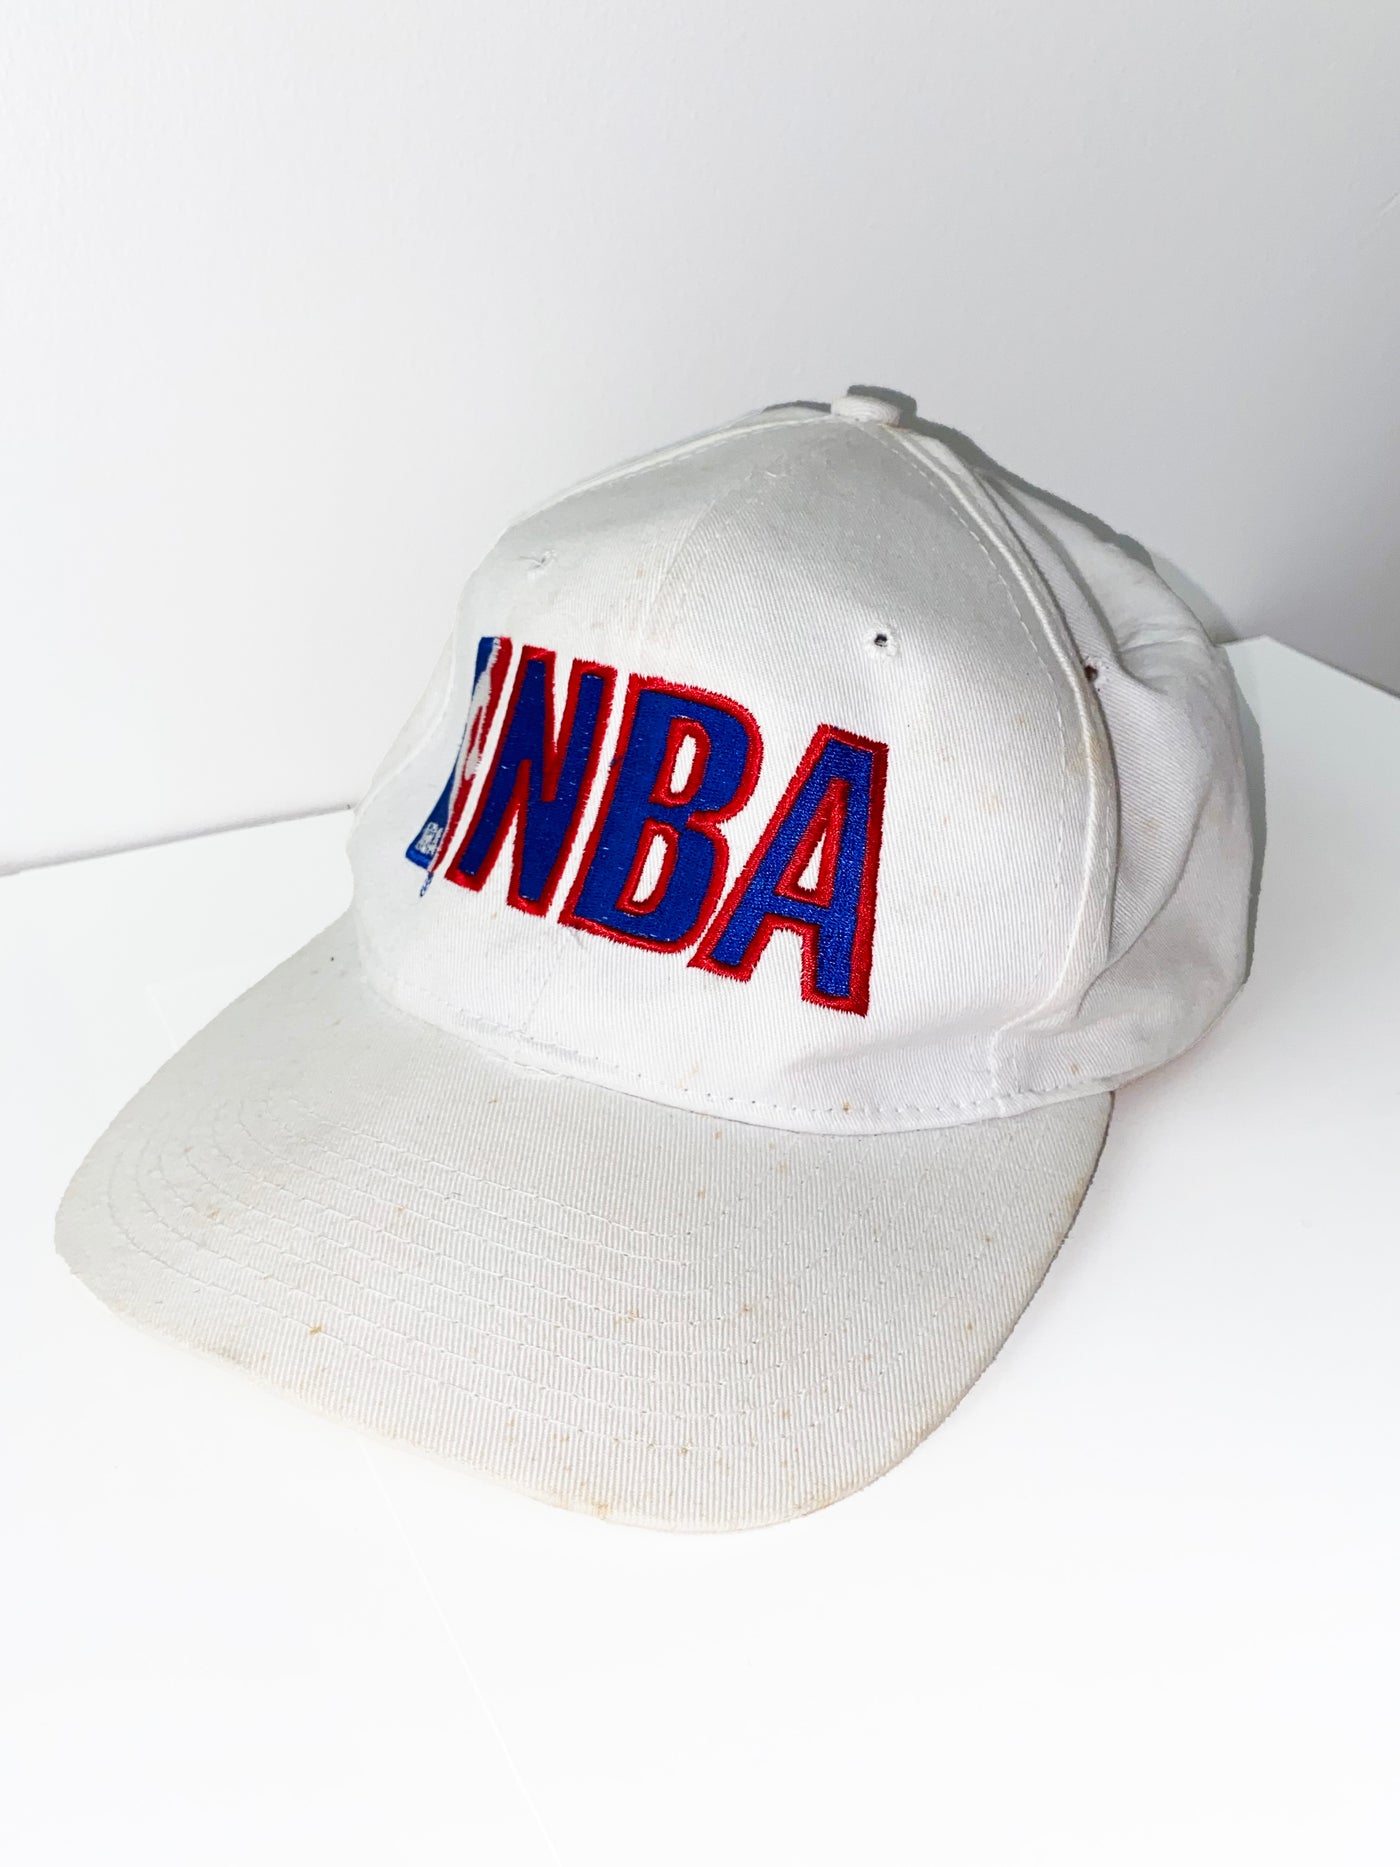 Vintage NBA Snapback